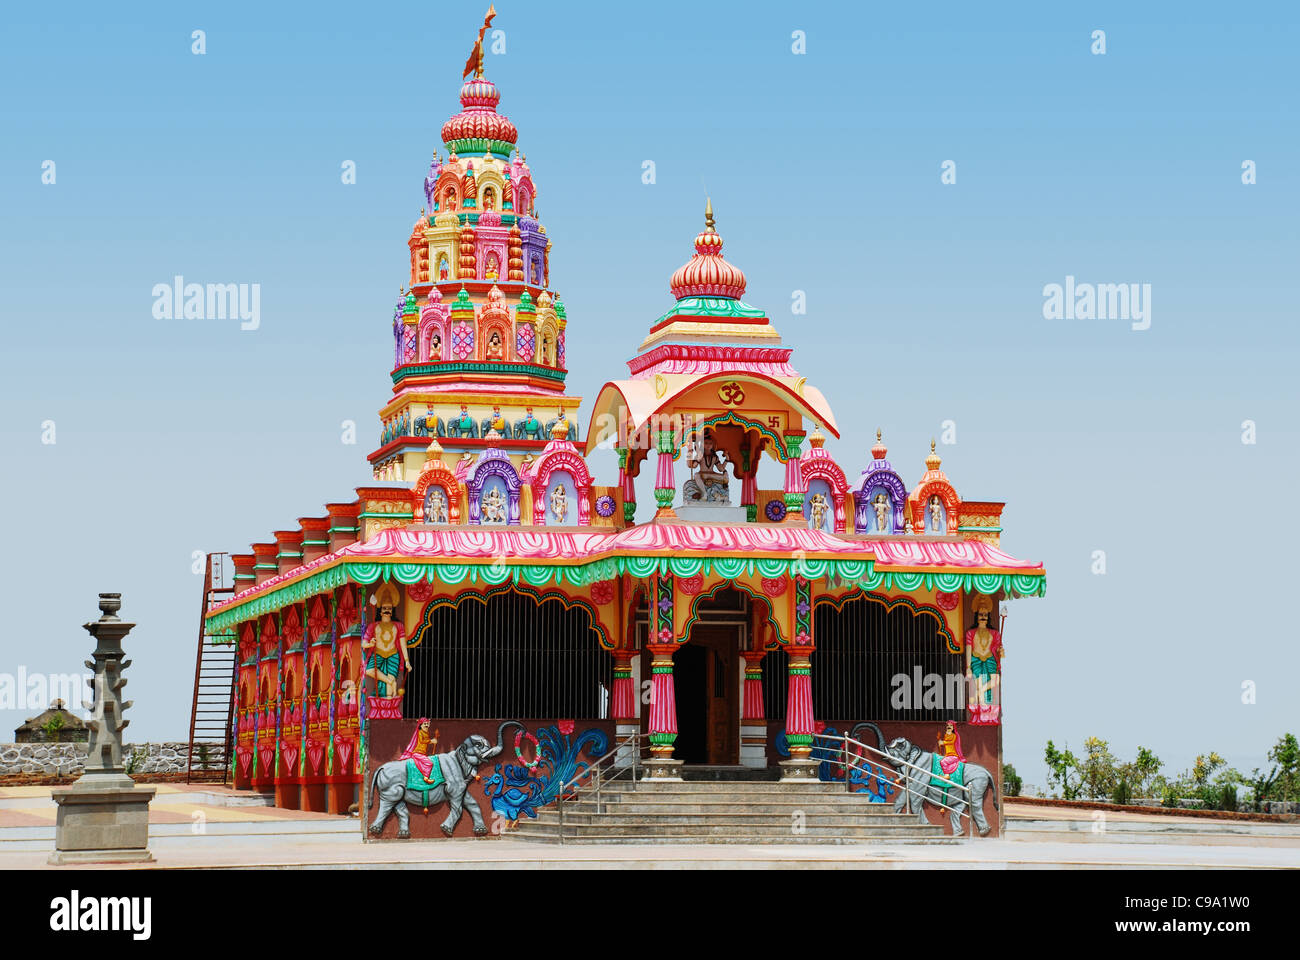 Voir d'une façon percutante peint Temple Hindou dédié au Dieu Shiva, Saswad Village, Pune, Maharashtra State Dist., Inde. Banque D'Images